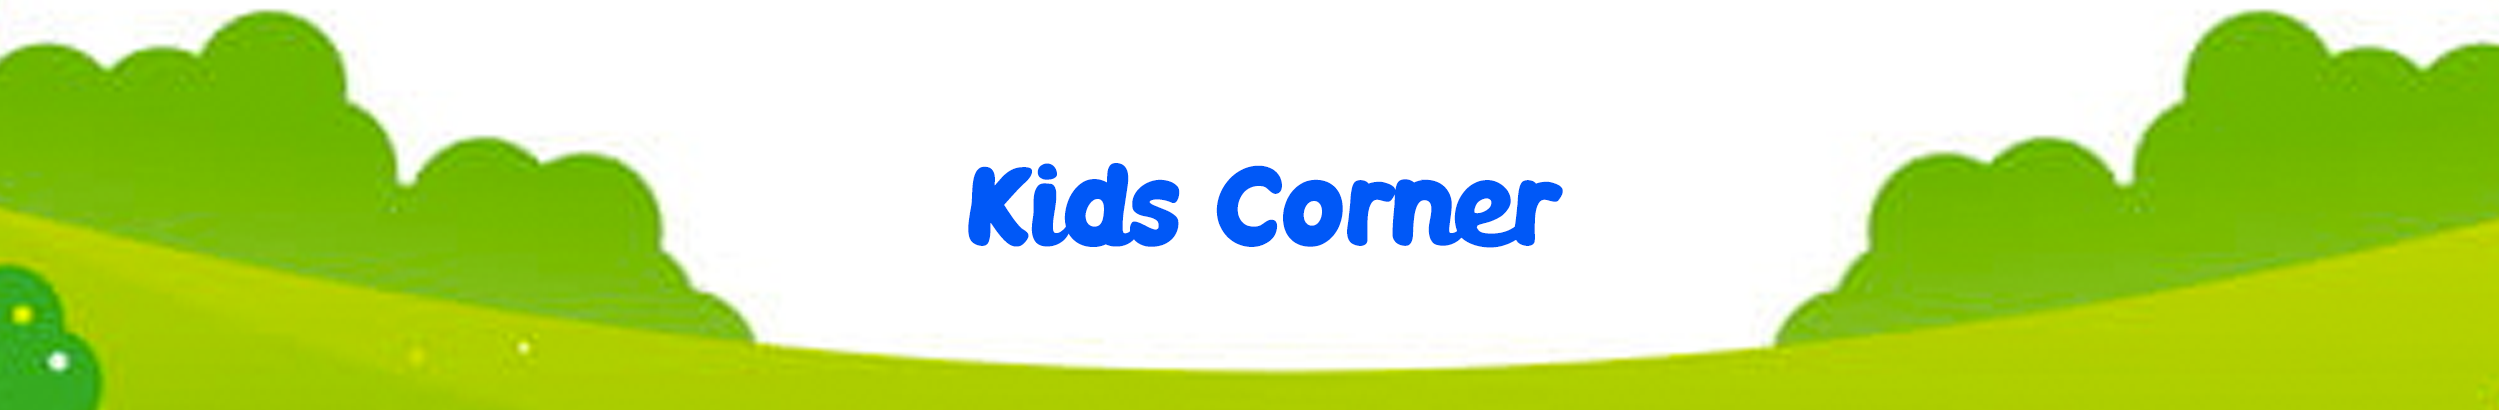 Banner de perfil de Kids Corner